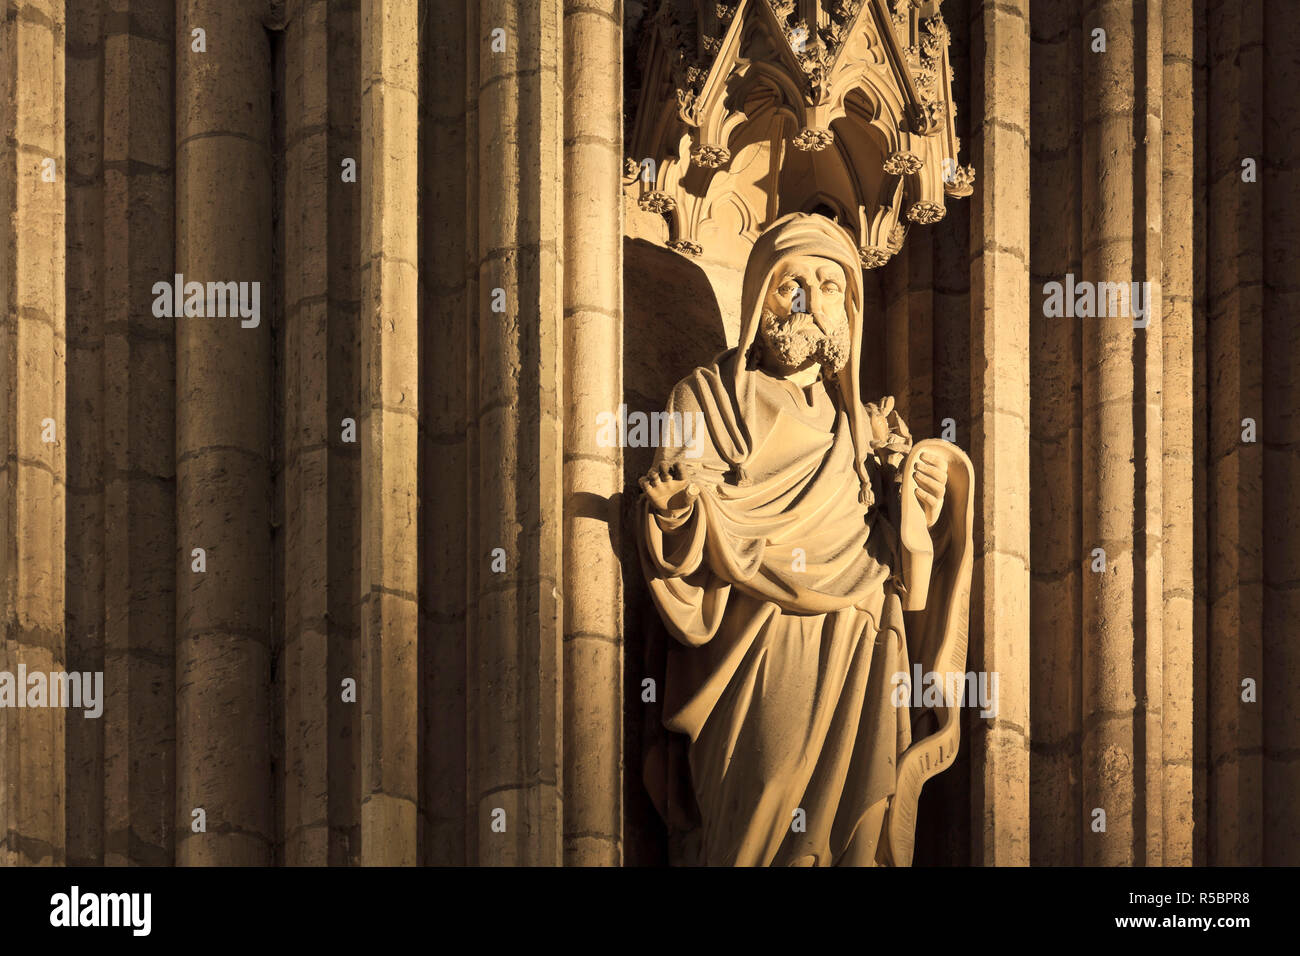 Alemania, en Renania del Norte-Westfalia, Colonia (Köln), el interior de la catedral Foto de stock